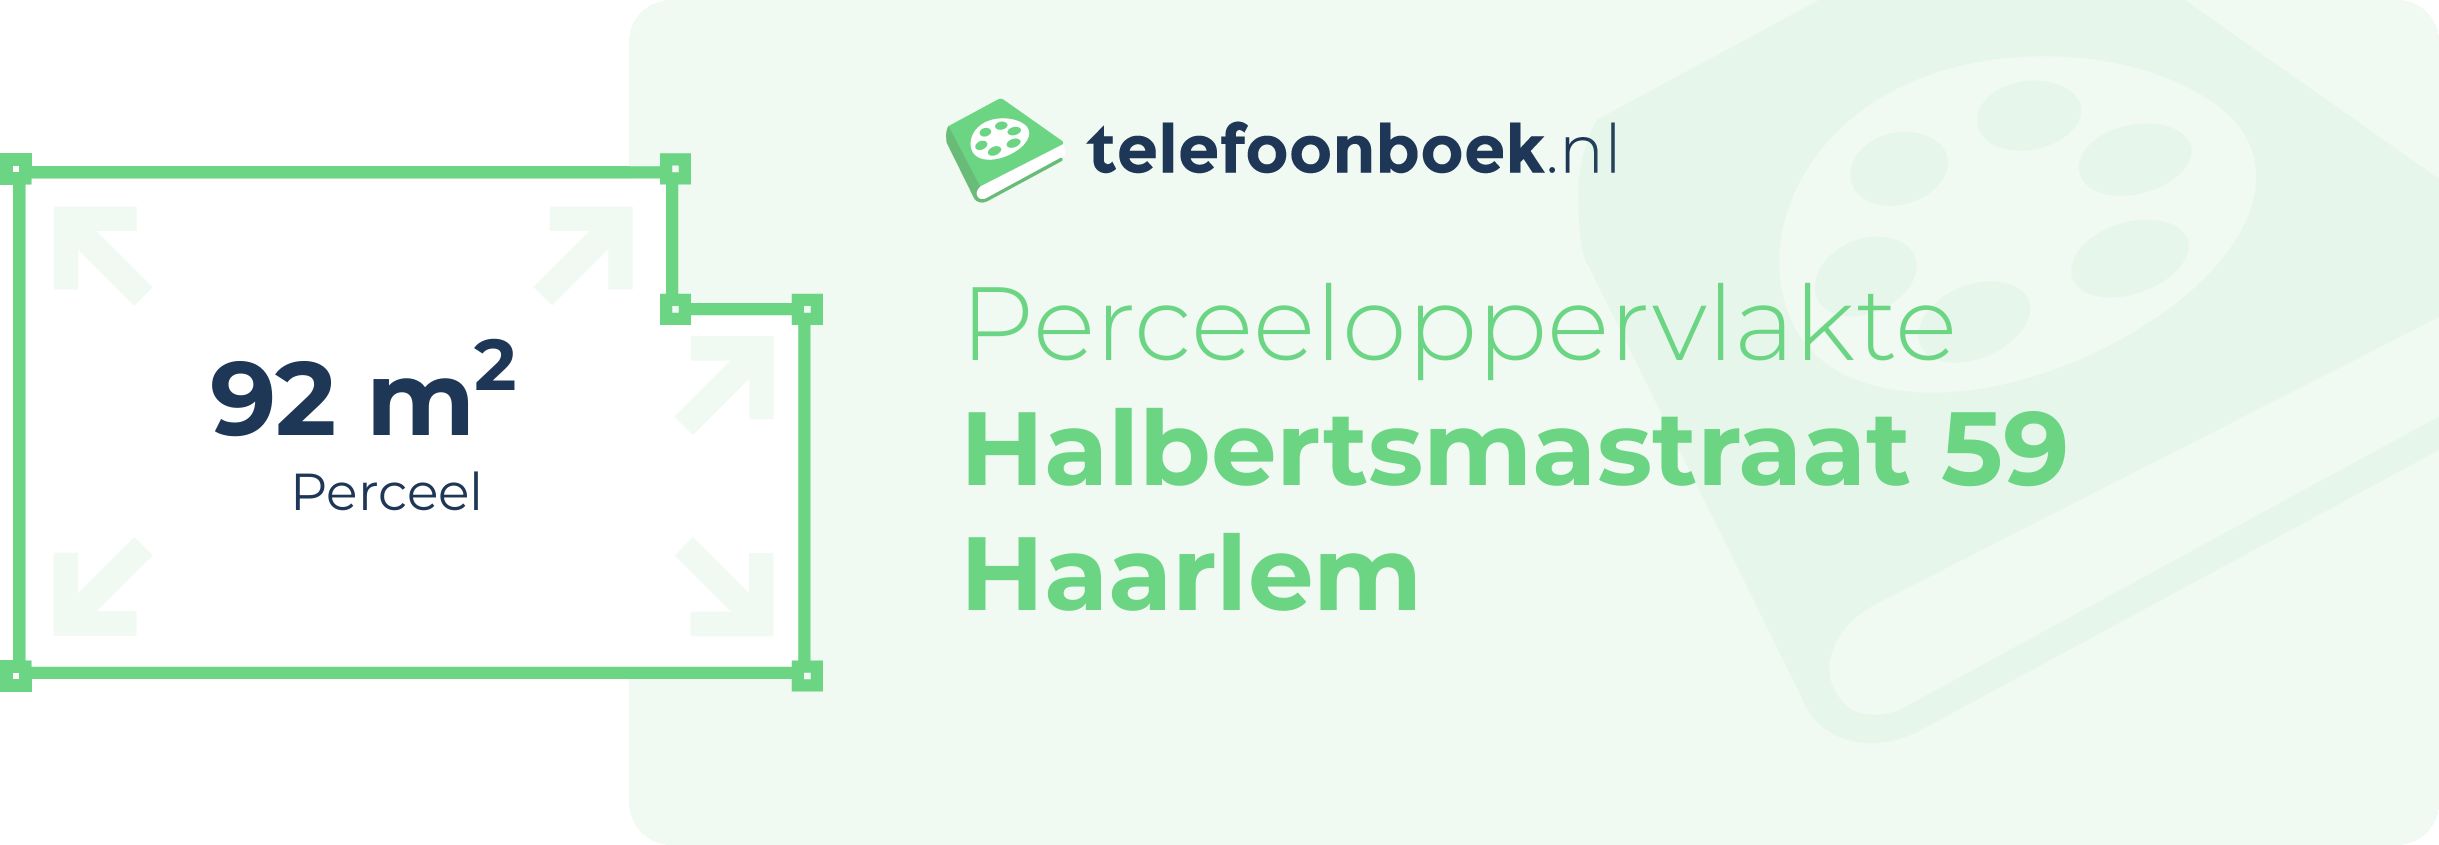 Perceeloppervlakte Halbertsmastraat 59 Haarlem